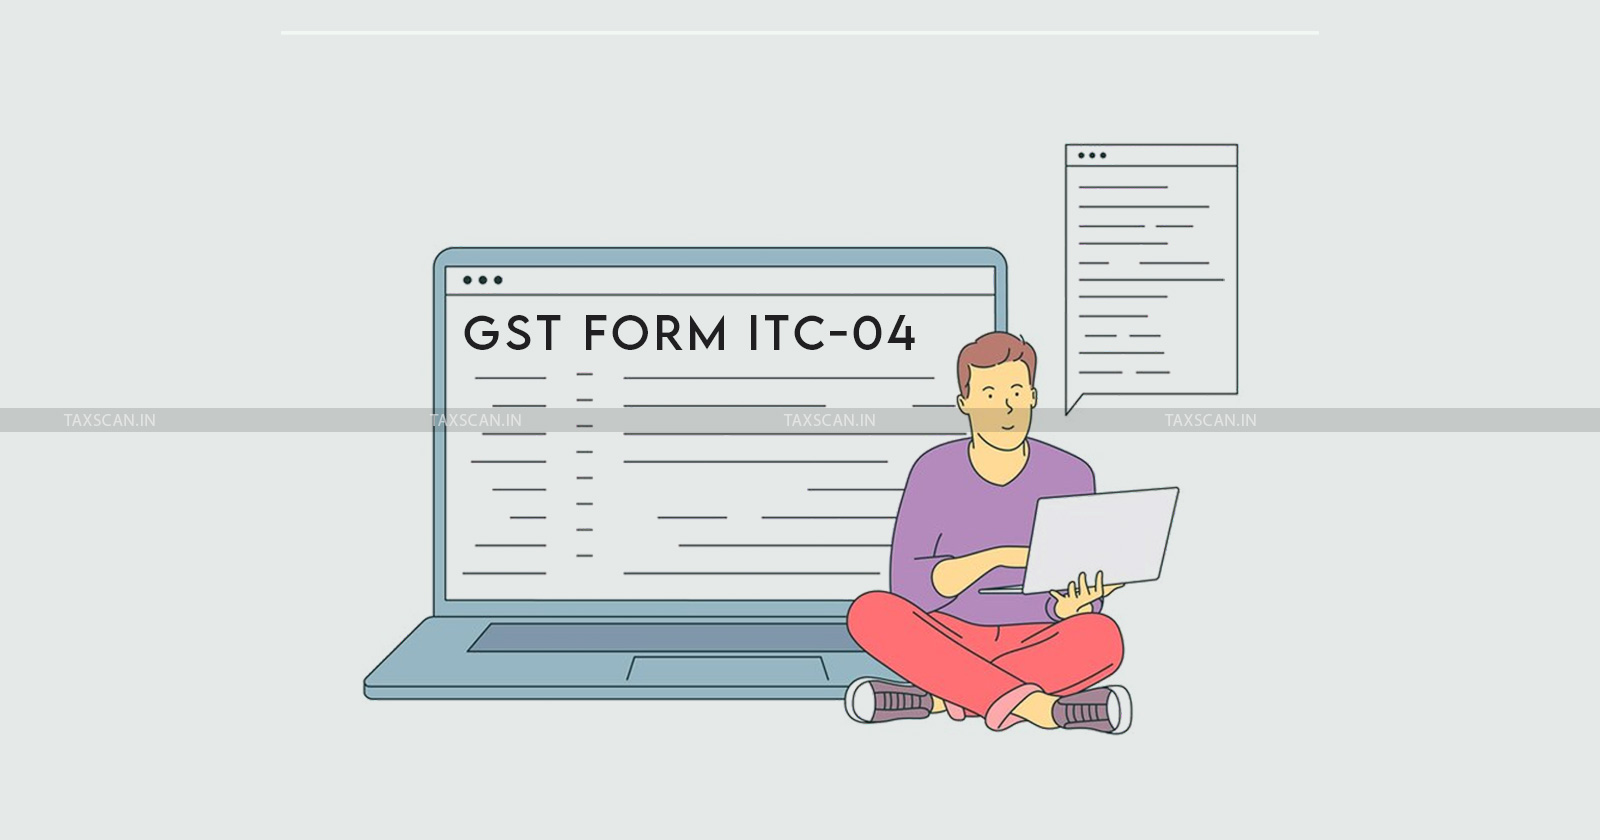 GST - GST Form - GST Portal - GST Form ITC-04 - taxscan